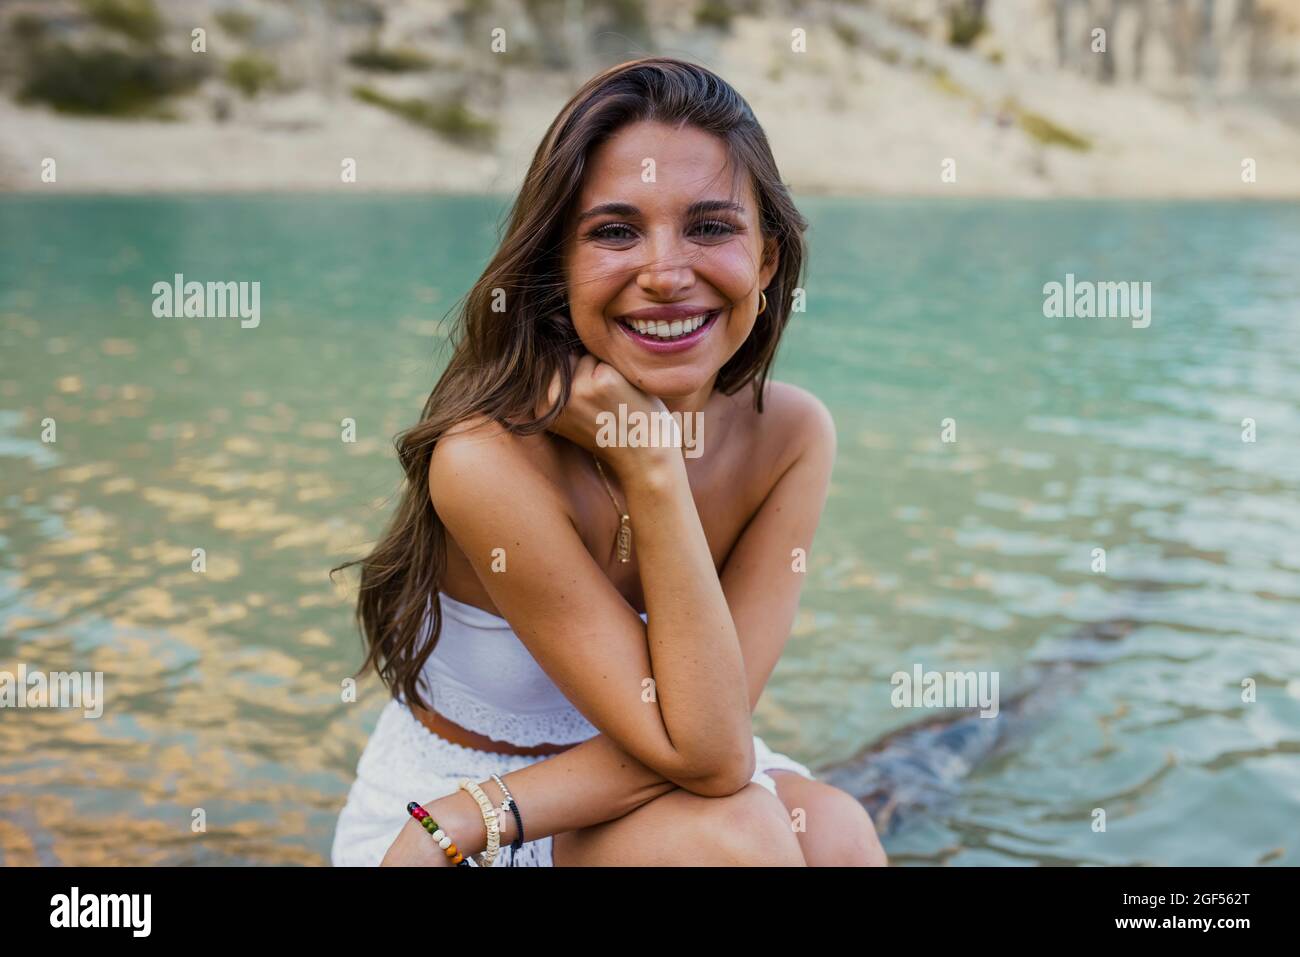 Beautiful young woman with hand on chin sitting at Pantano de Santa Ana, Castillonroy, Spain Stock Photo